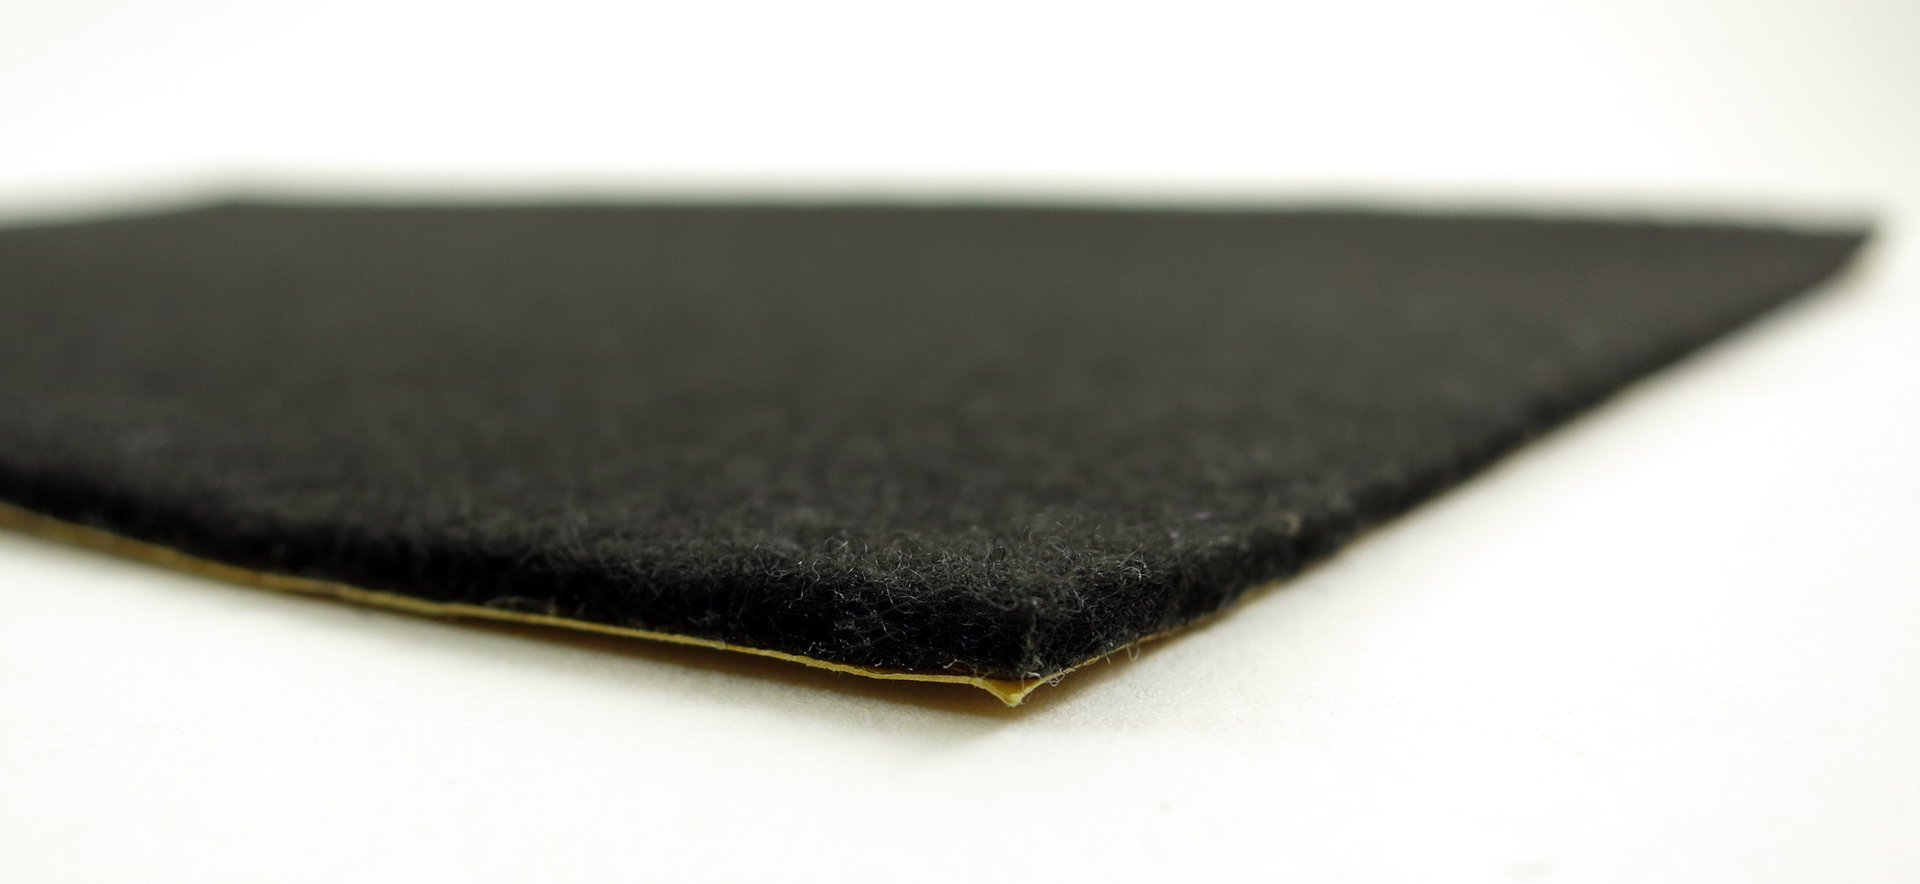 Filzgleiter quadratisch ab 5x5cm, 2mm dick | selbstklebend | schwarz + anthrazit